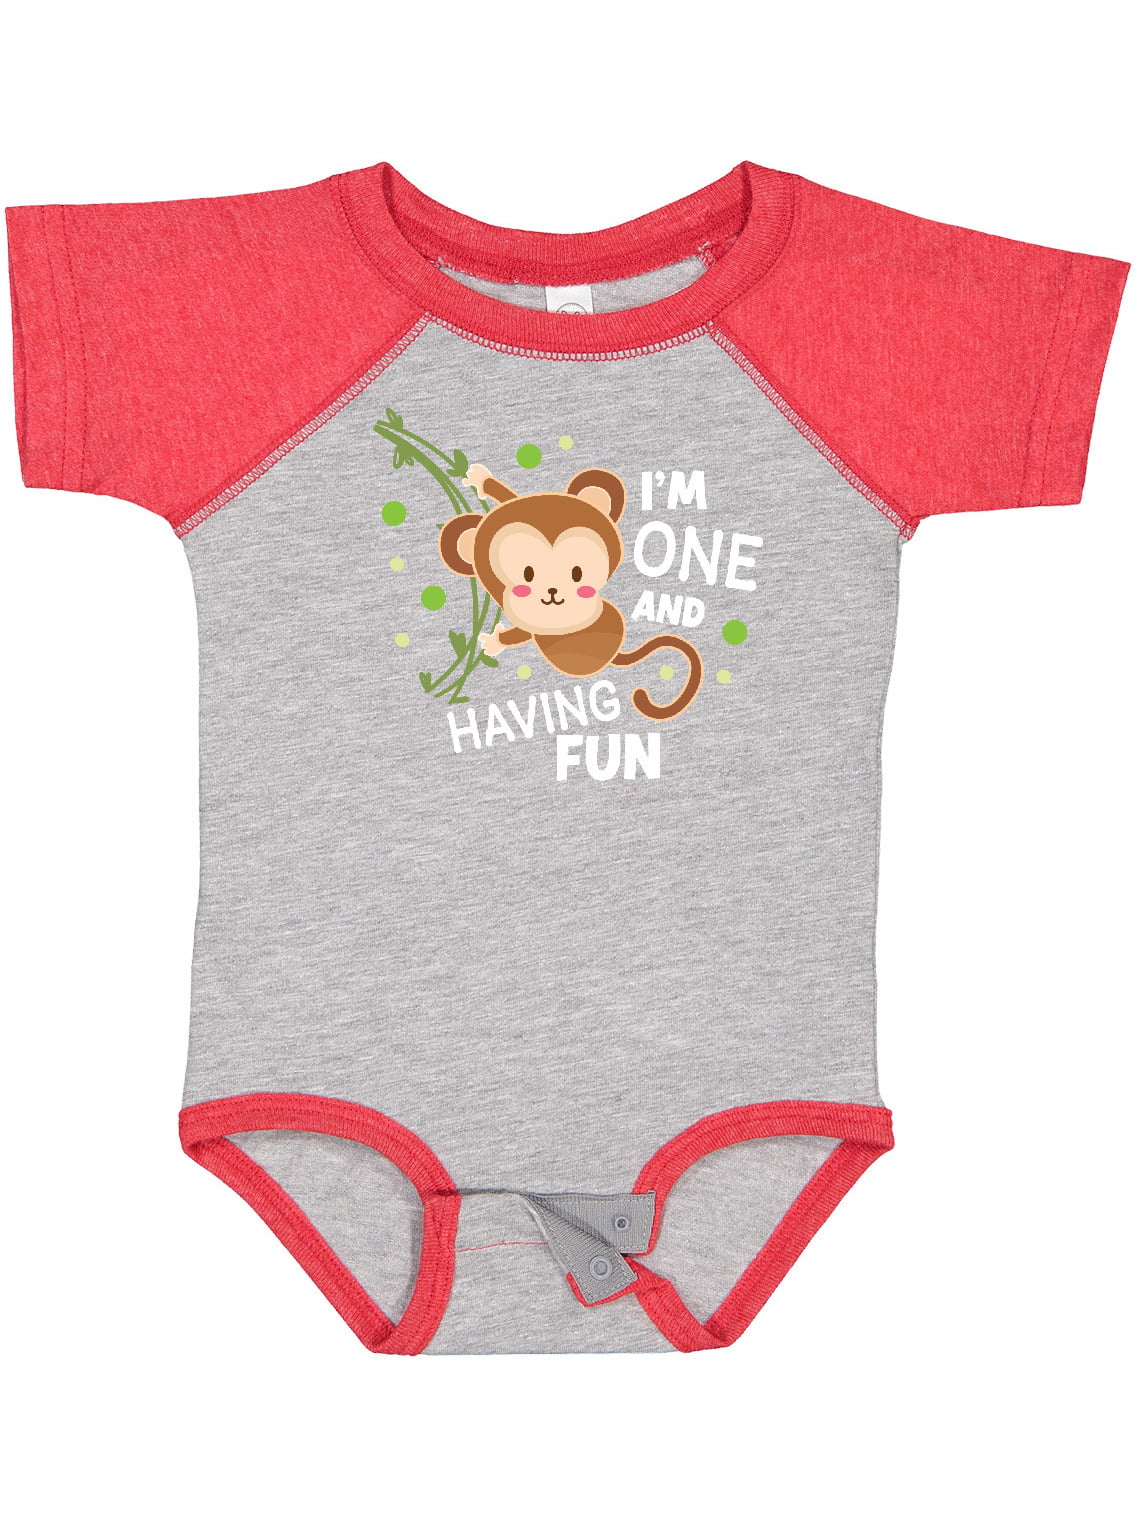 Baby Organic Cotton Bodysuit Pajama Romper Toddler 0-24 Months Set of 2 Monkey 